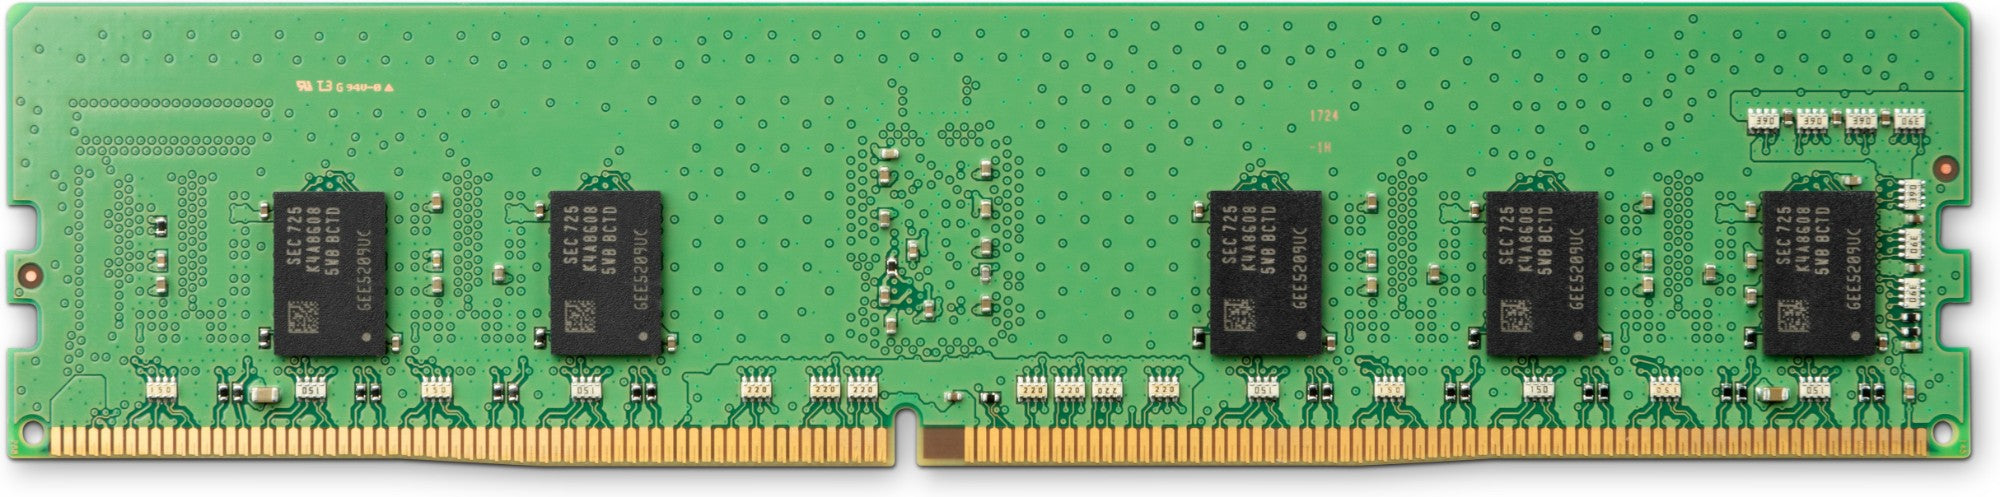 HP 8GB, DDR4, 2666MHz memory module 1 x 8 GB